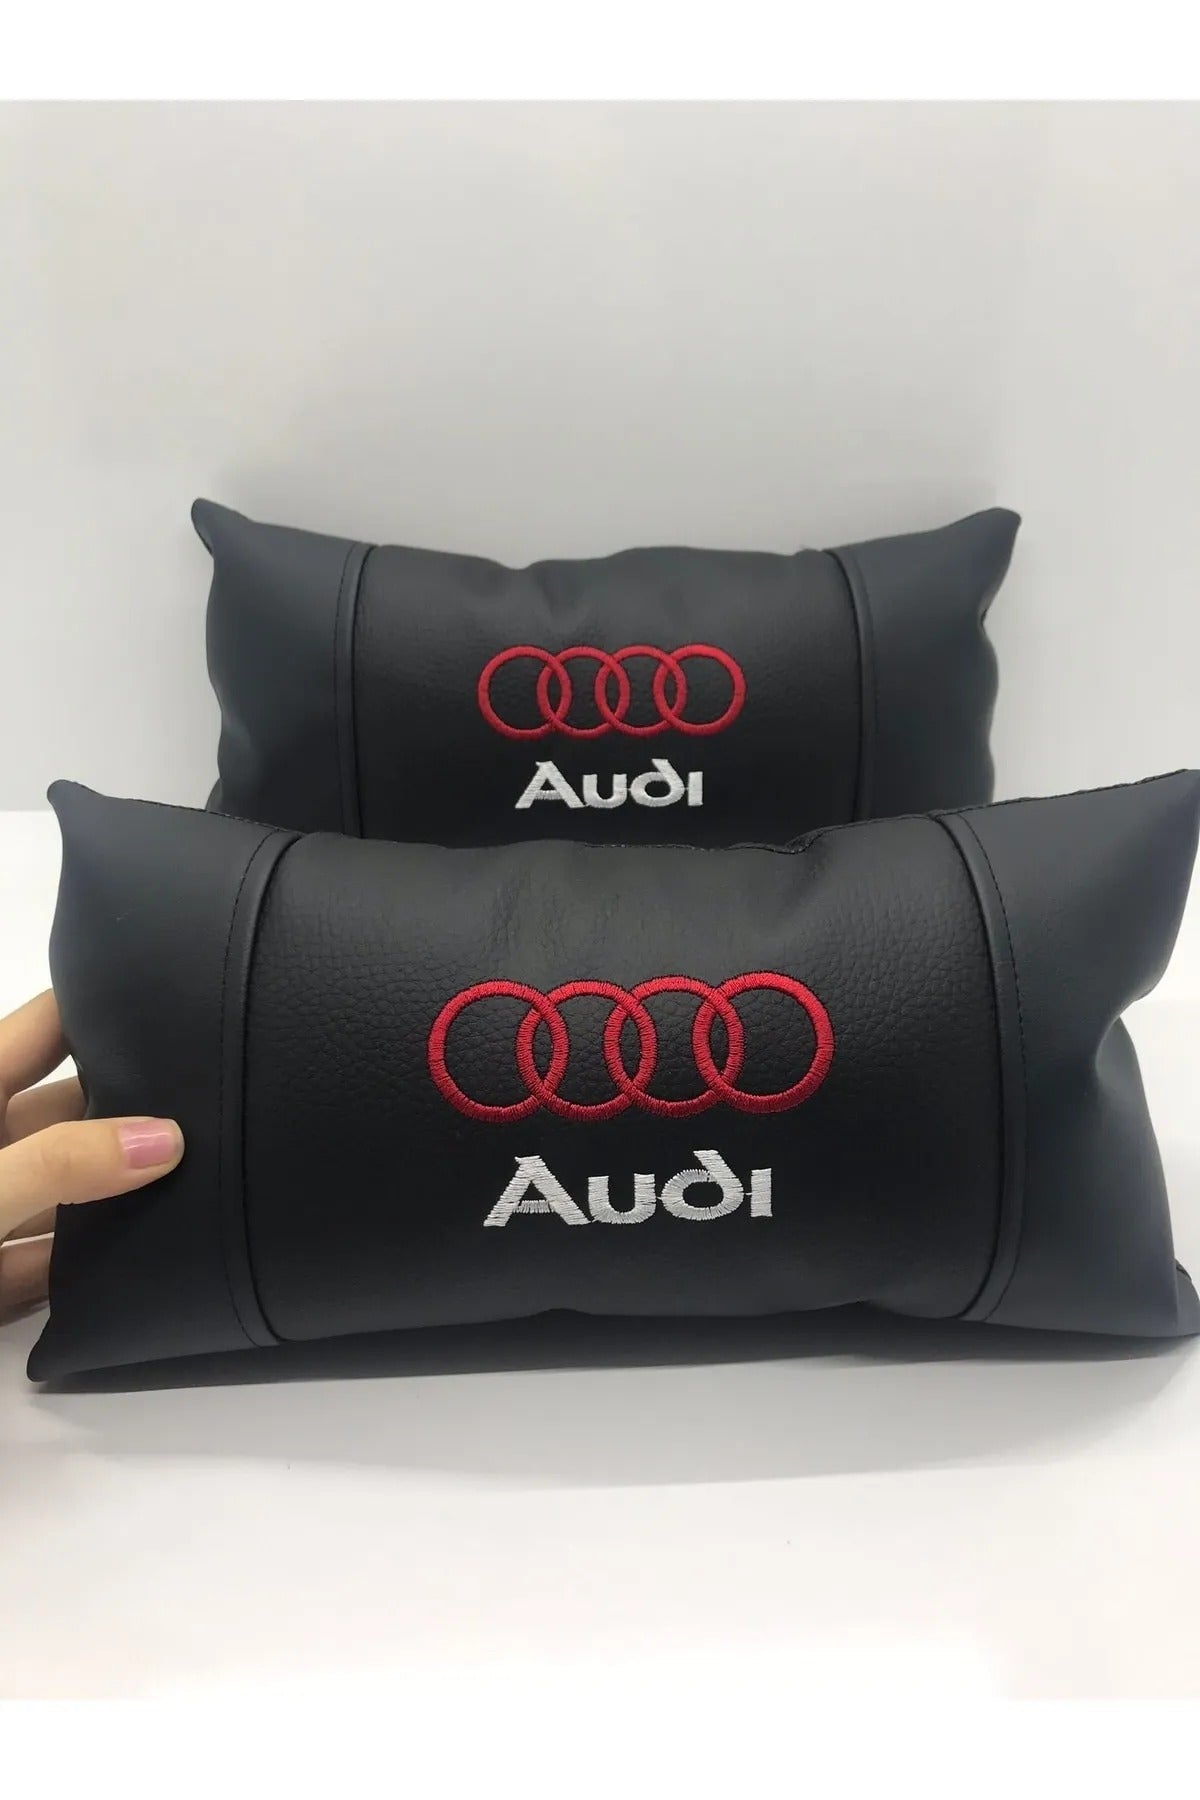 Audi Compatible Car Auto Neck Pillow 2 Pcs Luxury Leather Audi Car Pillow Car Pillow For ALL Audi Vehicle